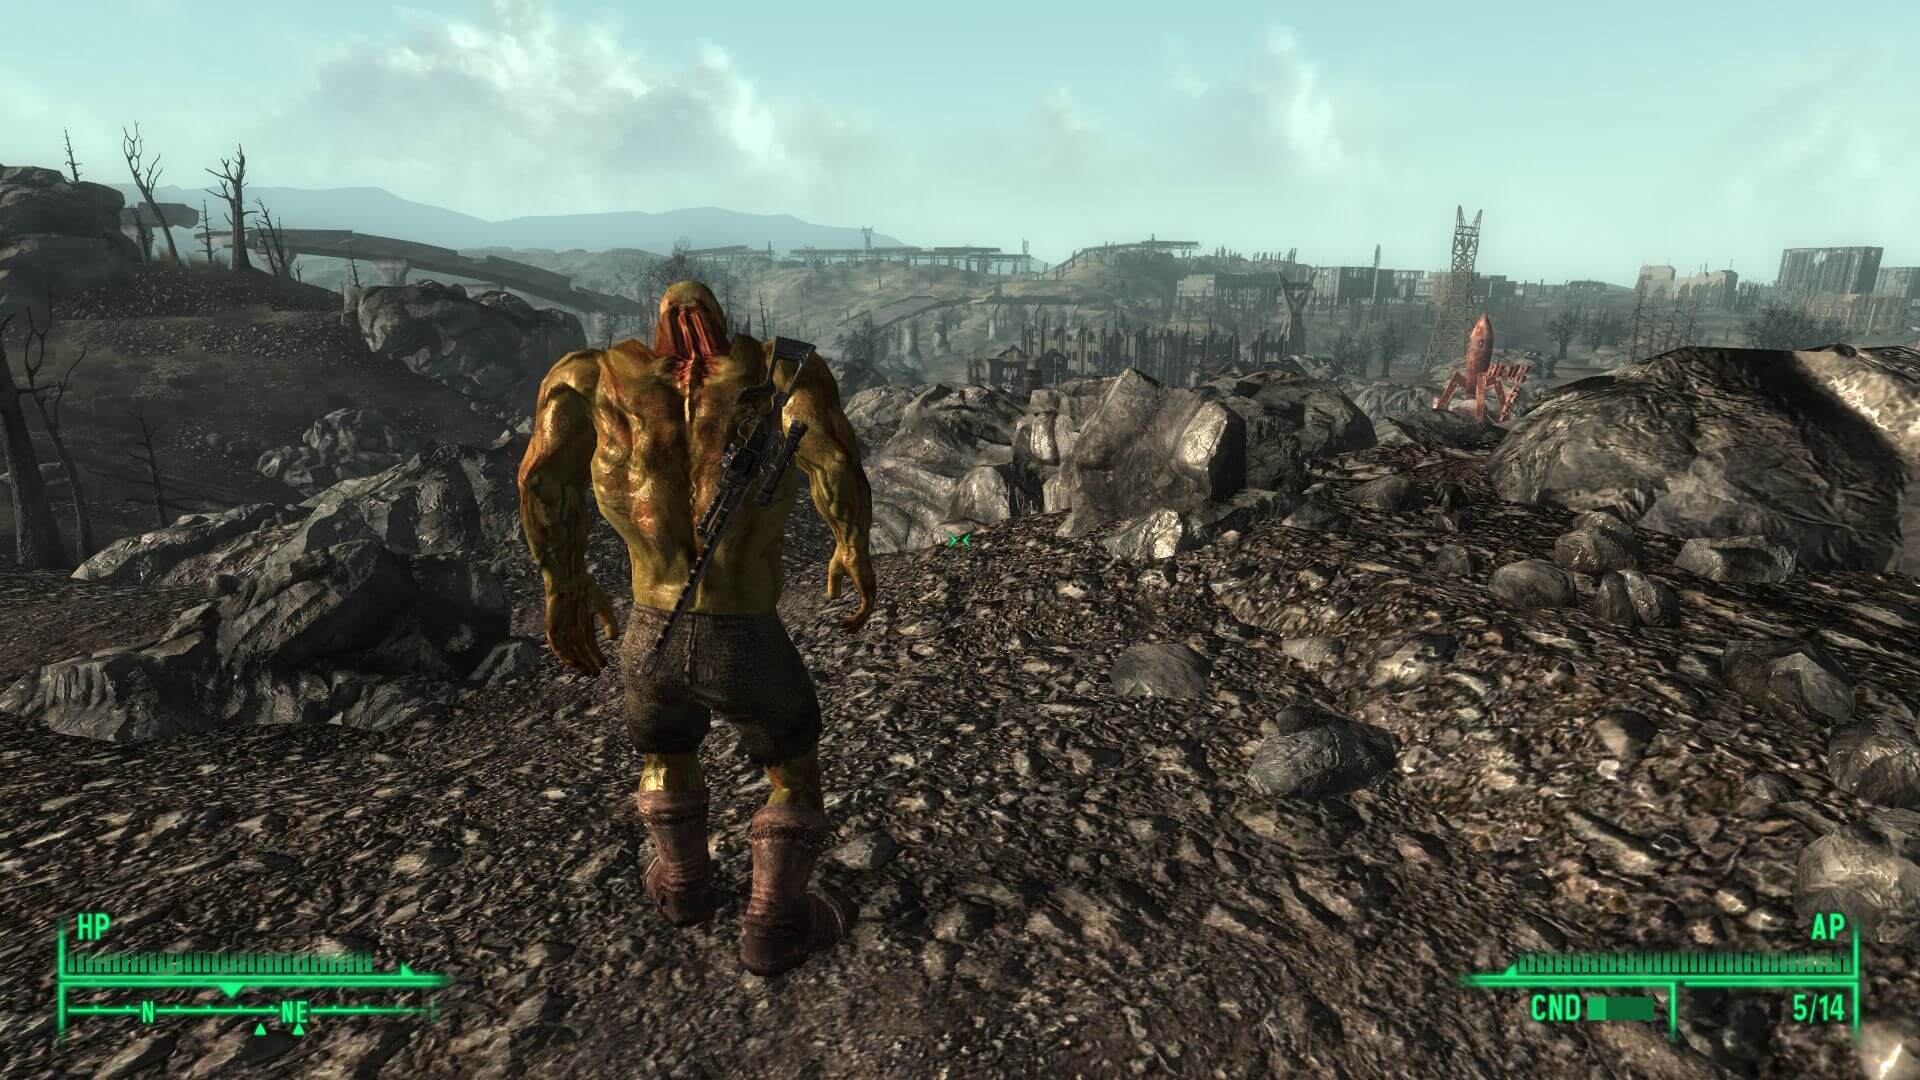 Мод для Fallout 3 позволяет стать супер-мутантом.